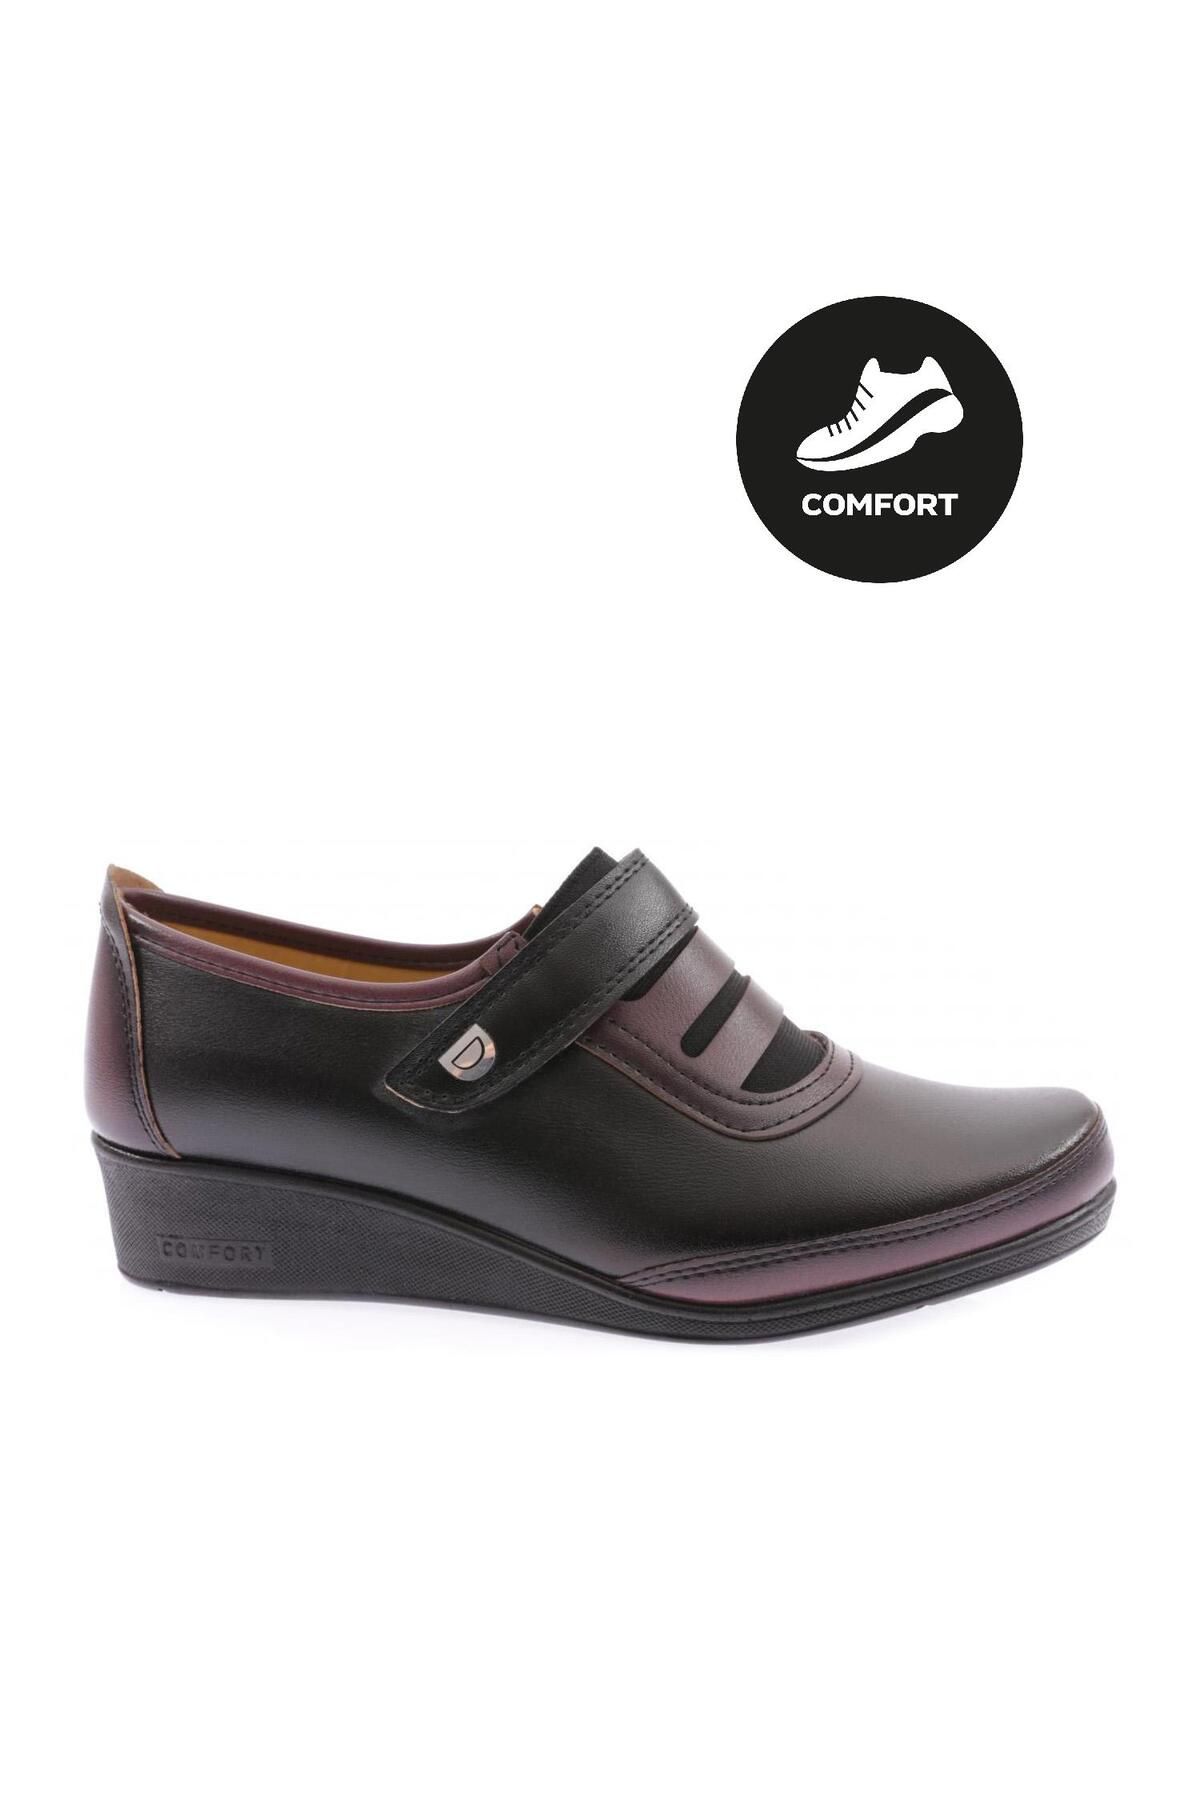 Dgn 020-22y Kadın Önü Lastiklı Cırtlı Comfort Ayakkabı